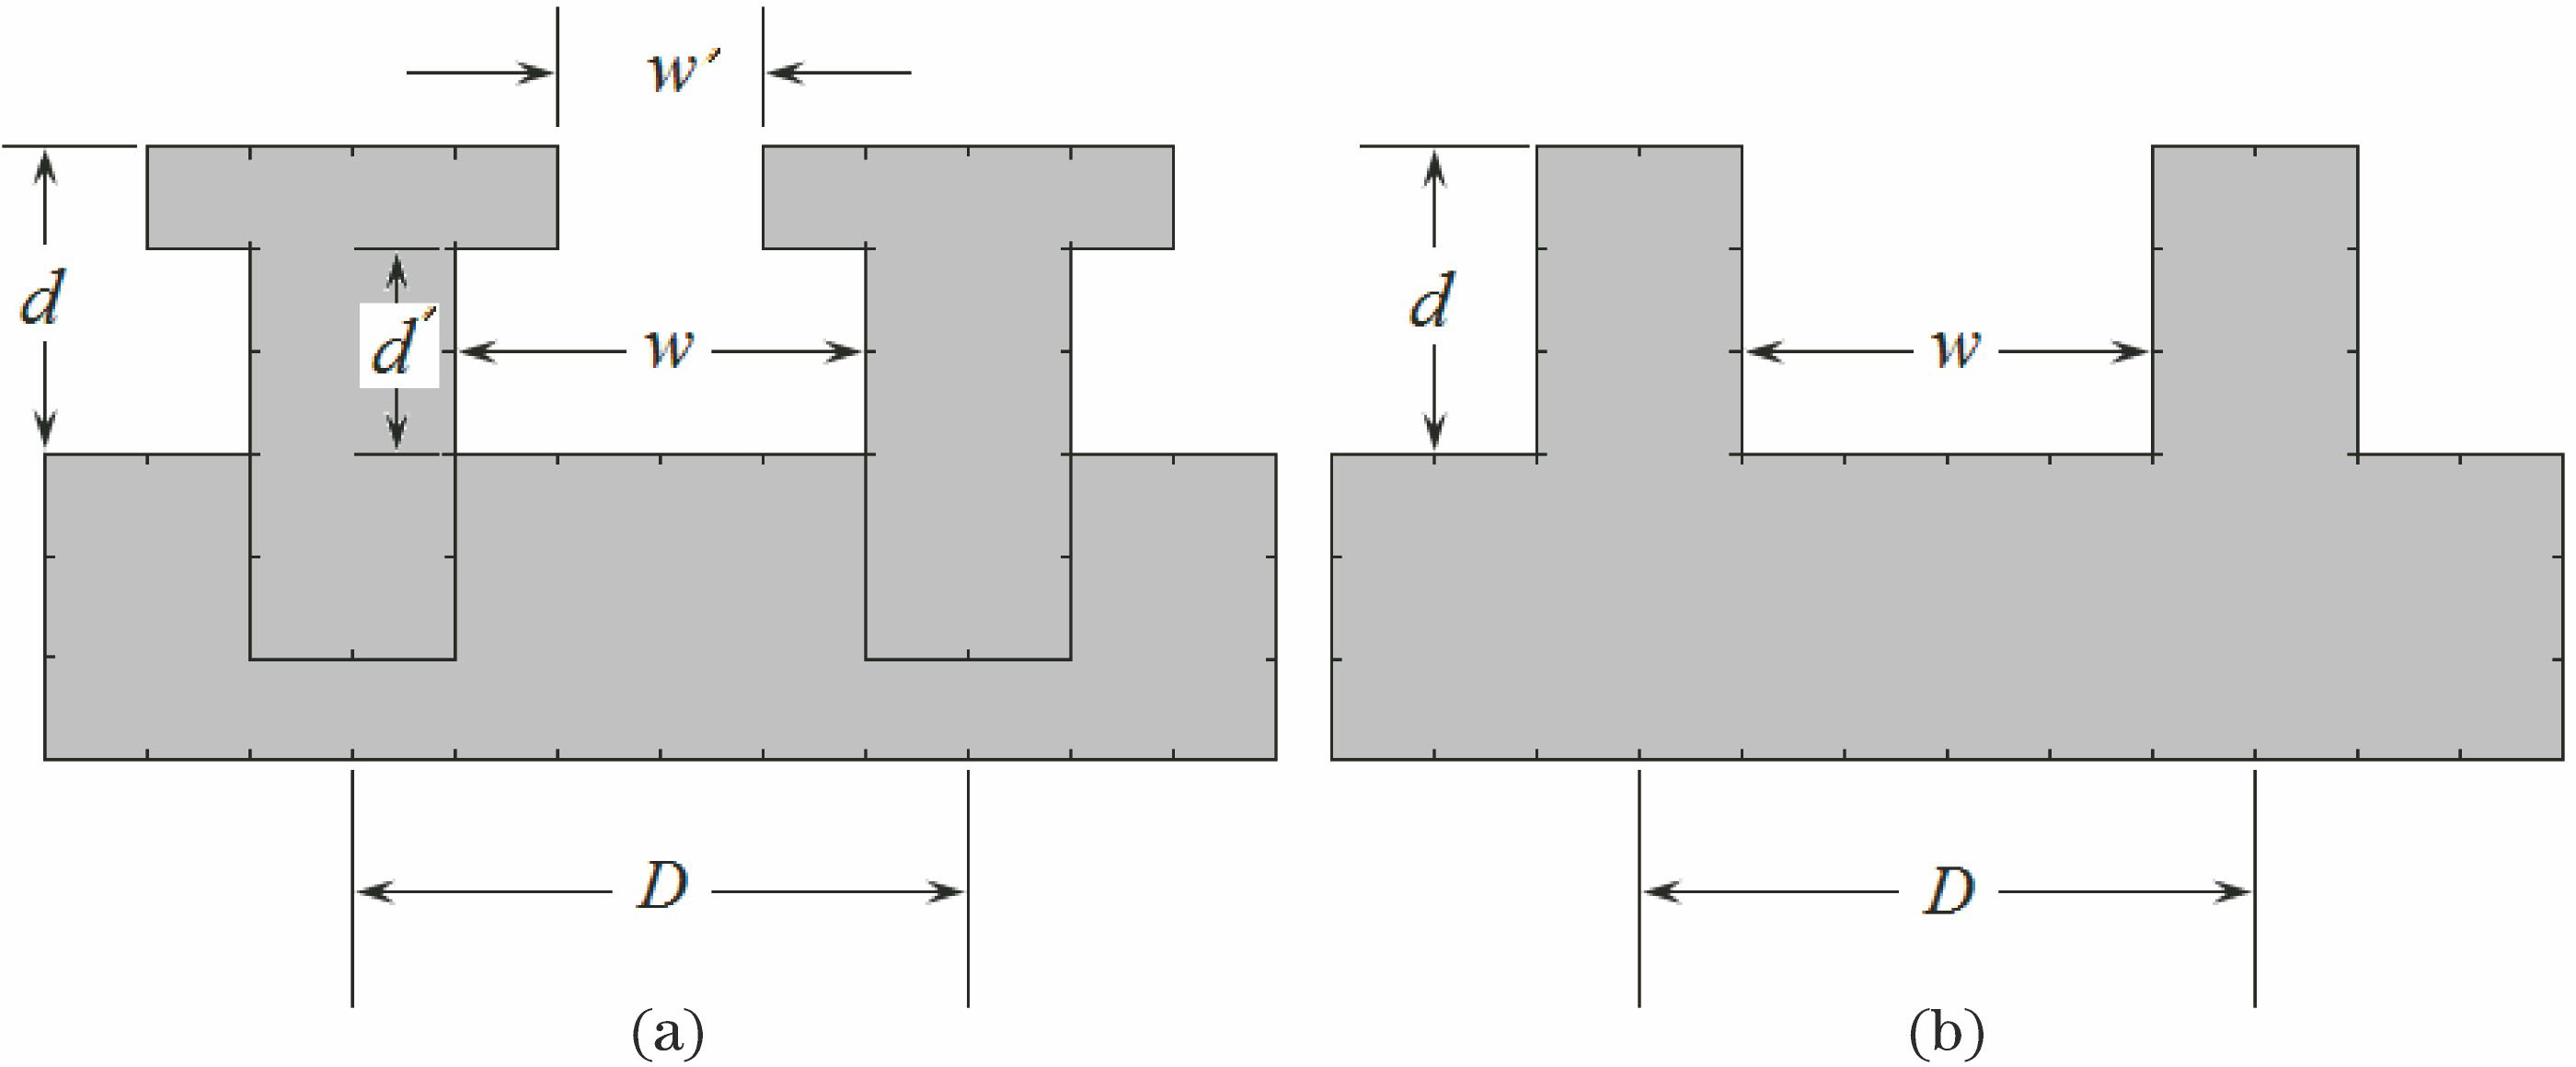 Parameters of gratings. (a) T shape grating; (b) rectangular grating